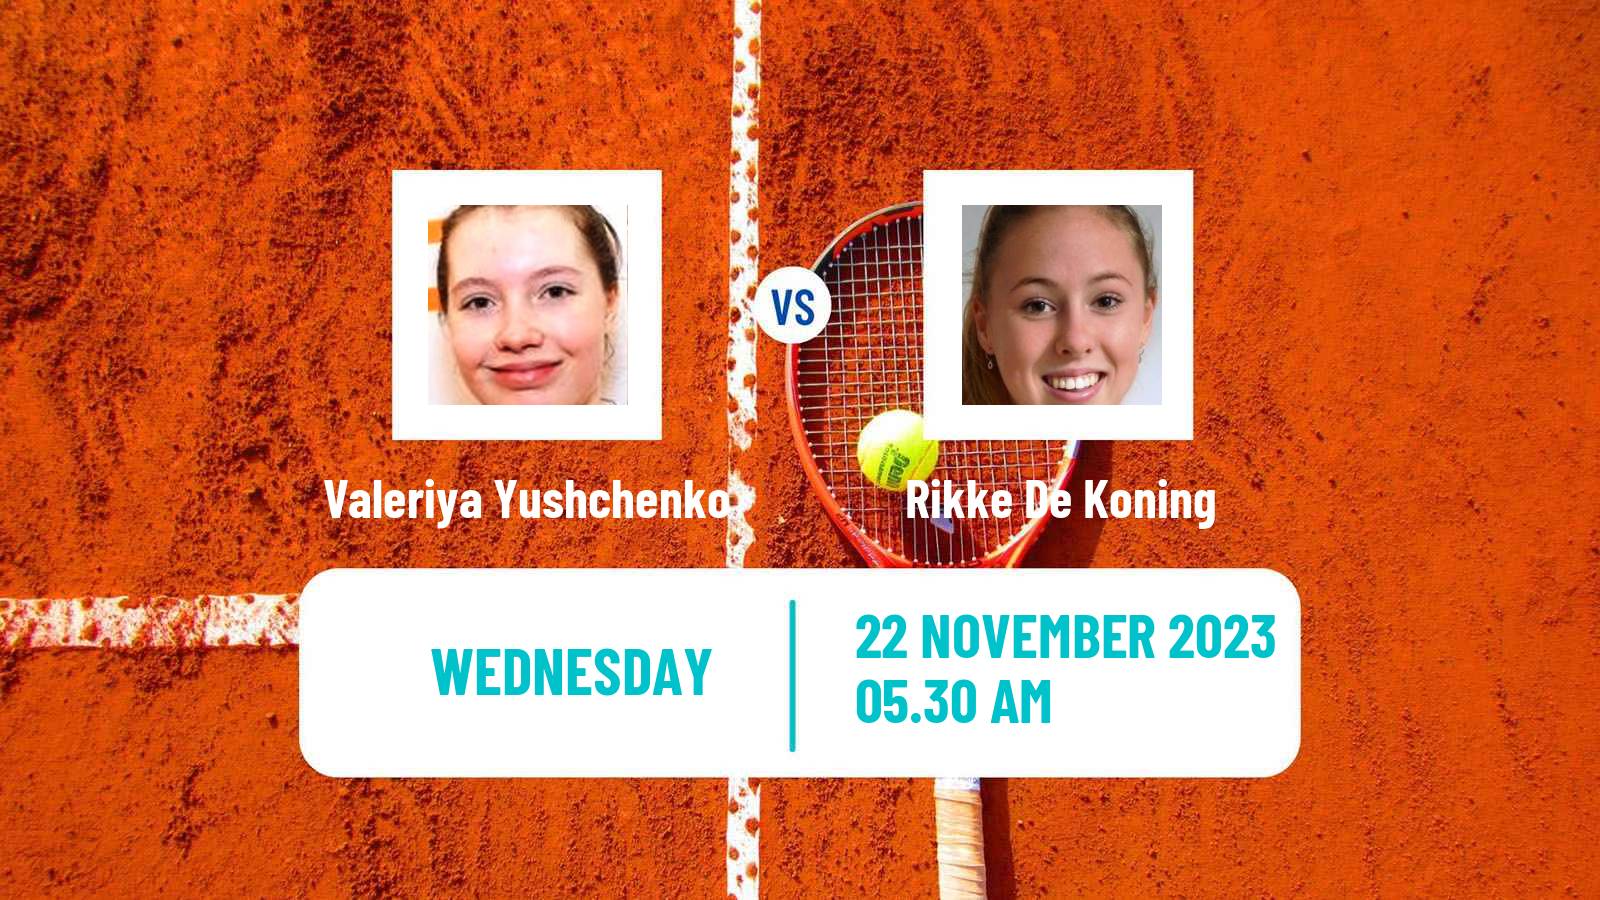 Tennis ITF W15 Antalya 19 Women Valeriya Yushchenko - Rikke De Koning